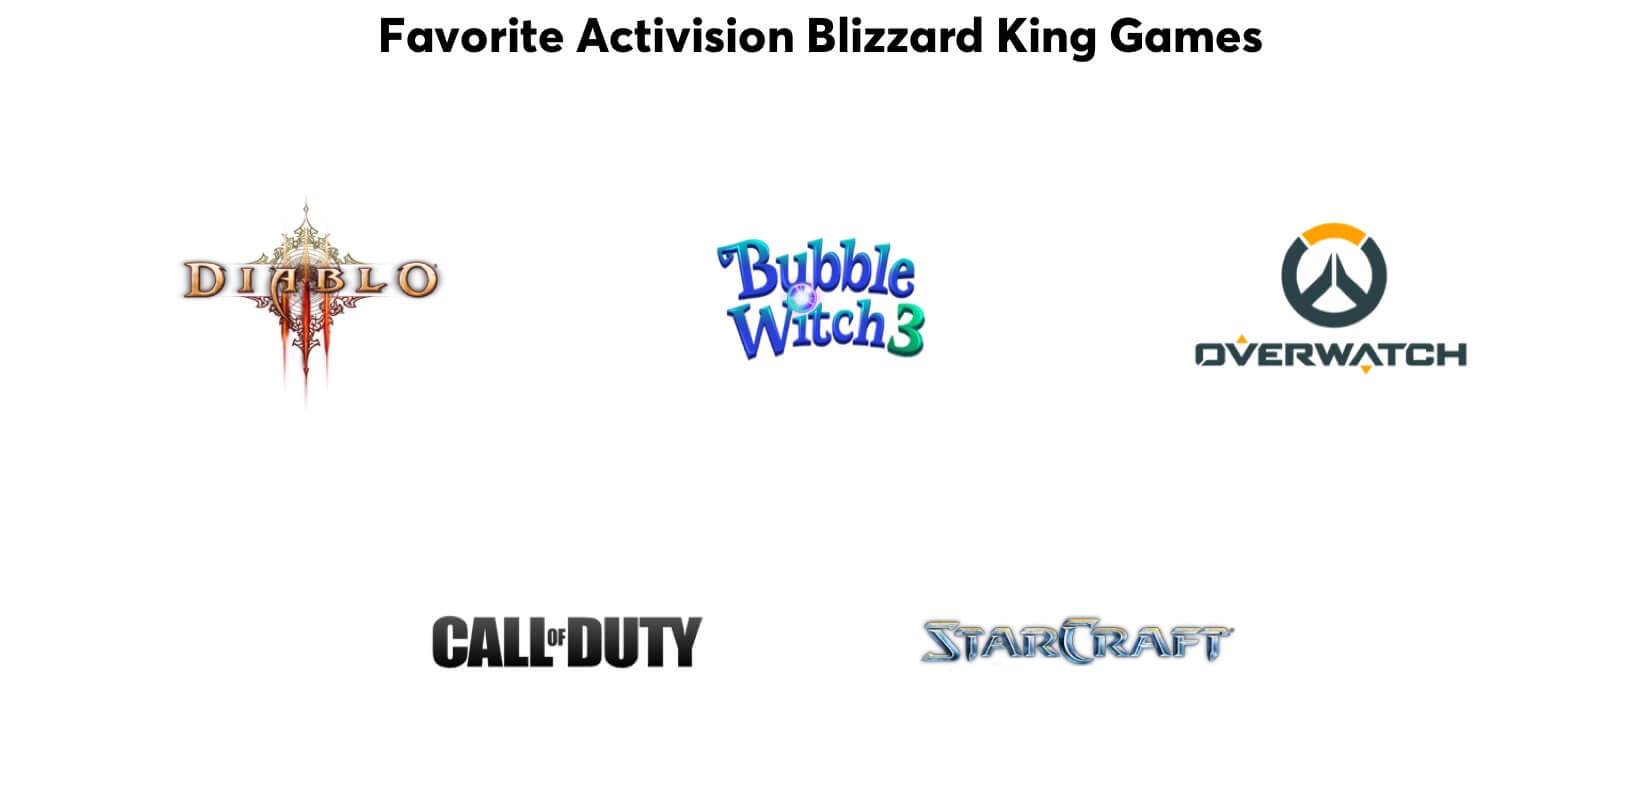 Juegos favoritos de los adeptos: Diablo, Bubble Witch, Overwatch, Call of Duty y StarCraft